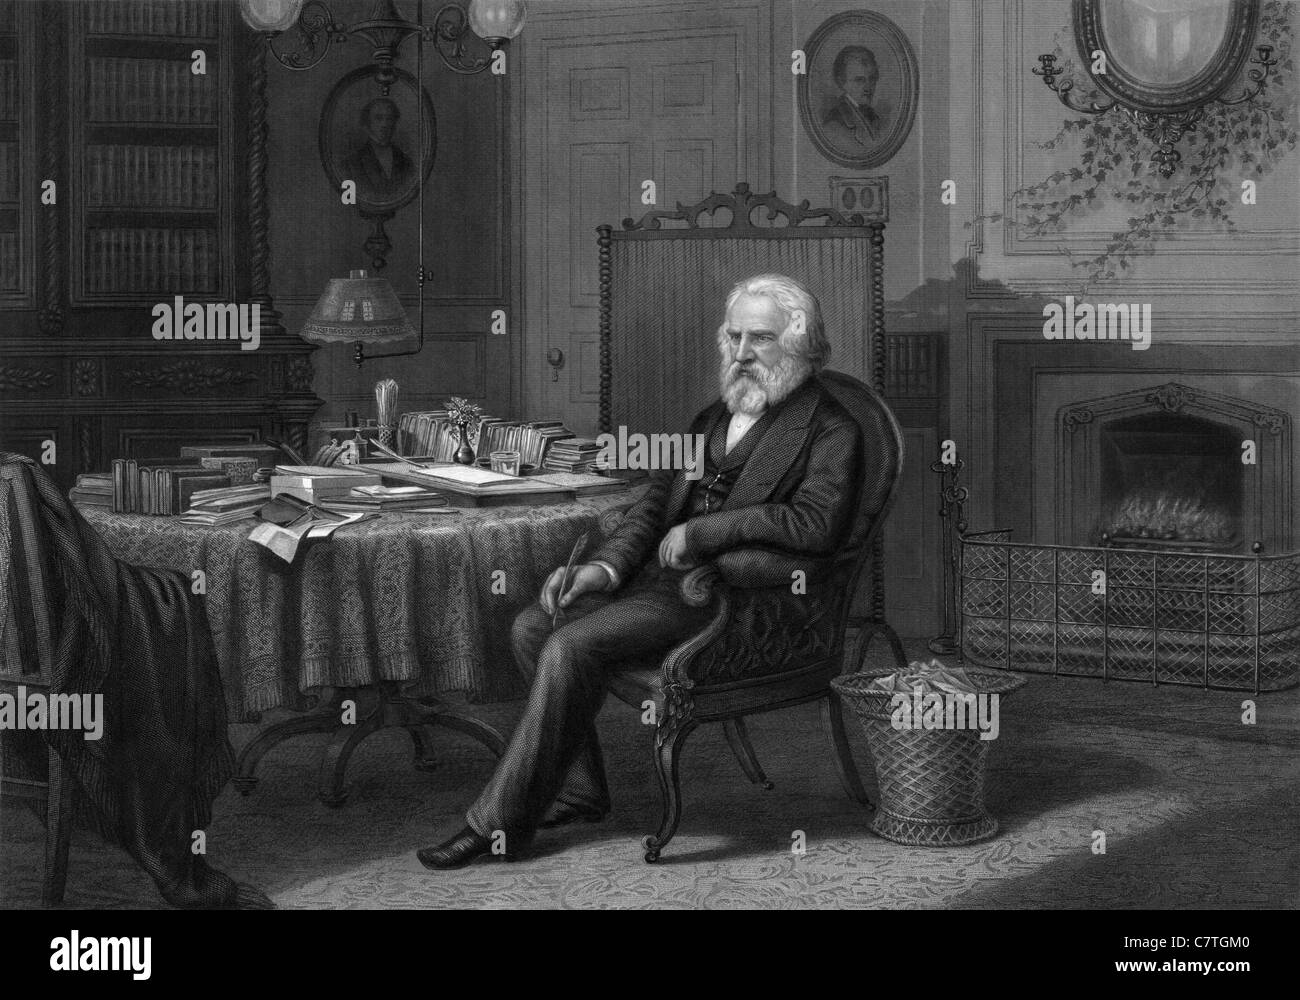 Gravure portrait Vintage circa 1880 d'éducateur et poète américain Henry Wadsworth Longfellow (1807 - 1882) assis dans son étude. Banque D'Images